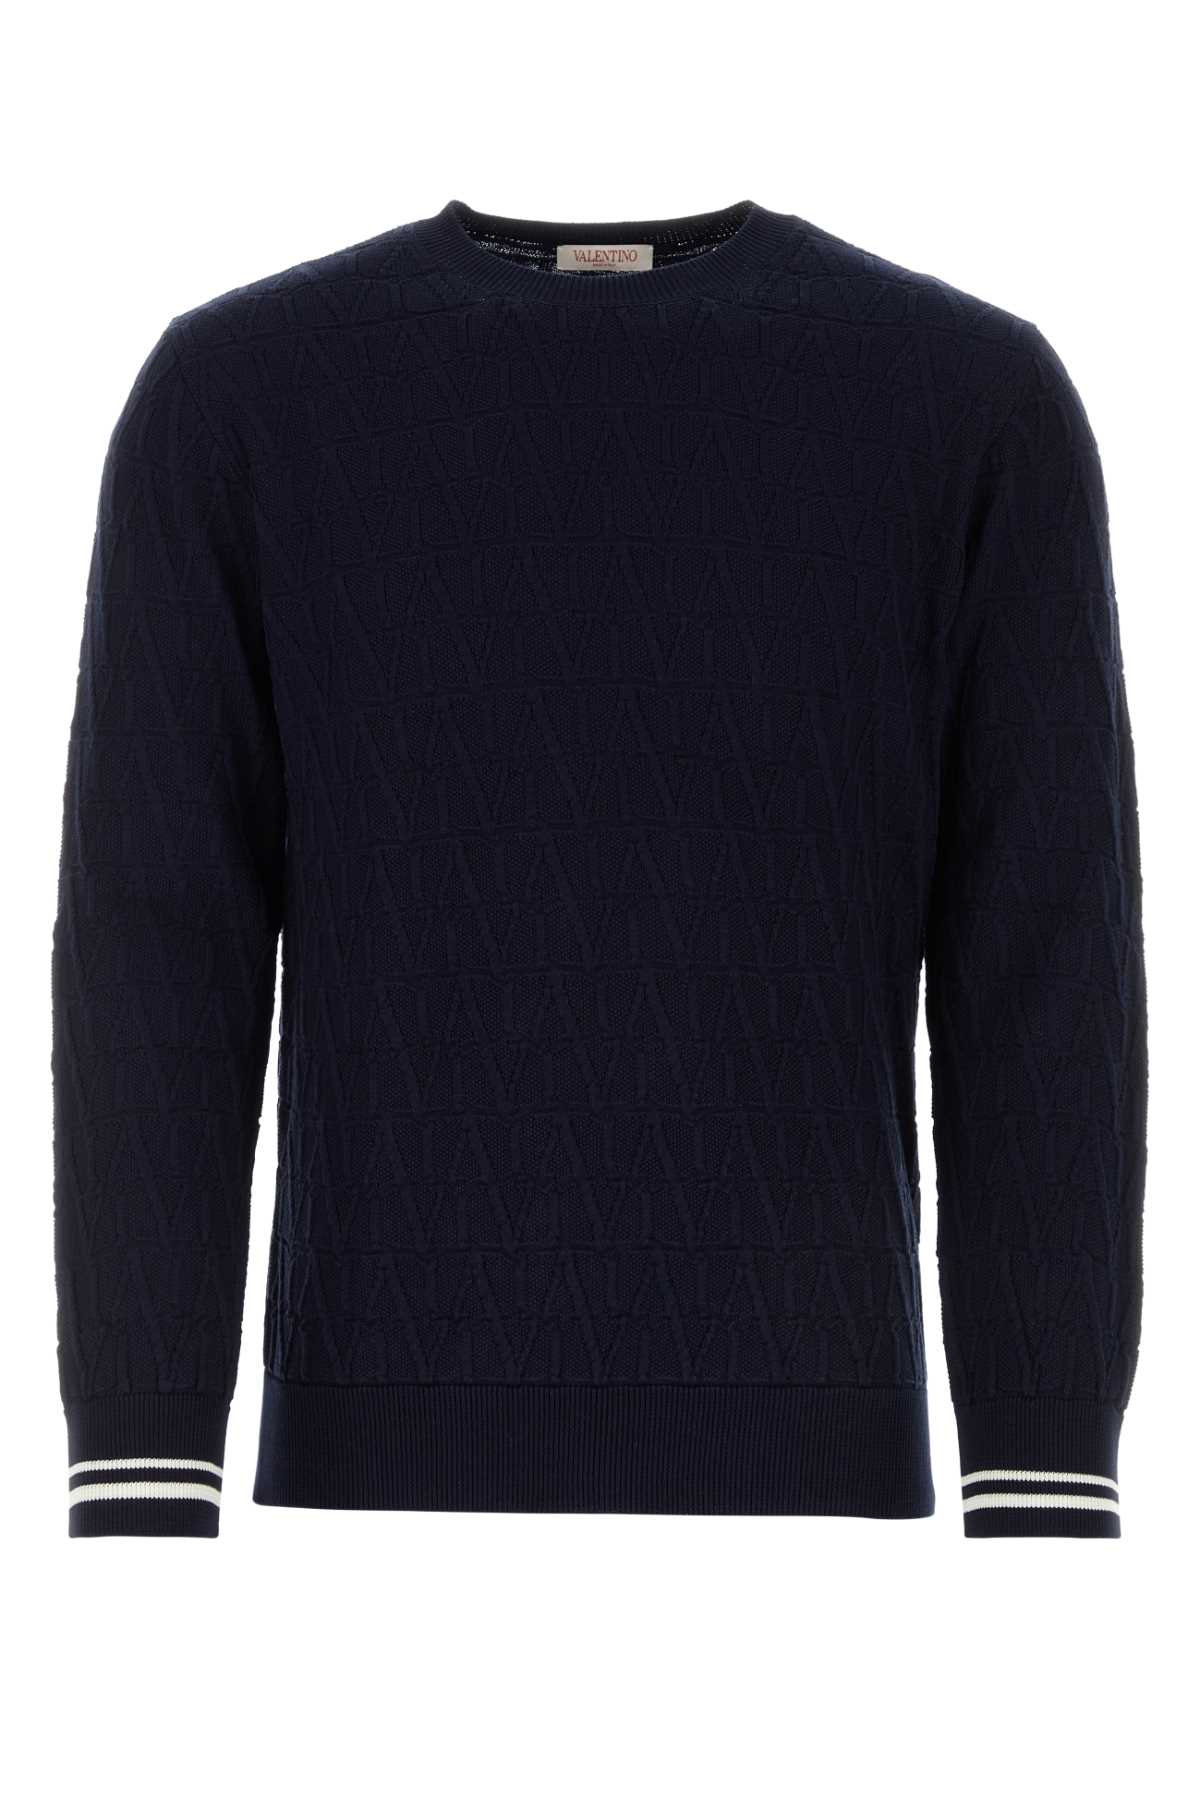 Valentino Dark Blue Cotton Sweater